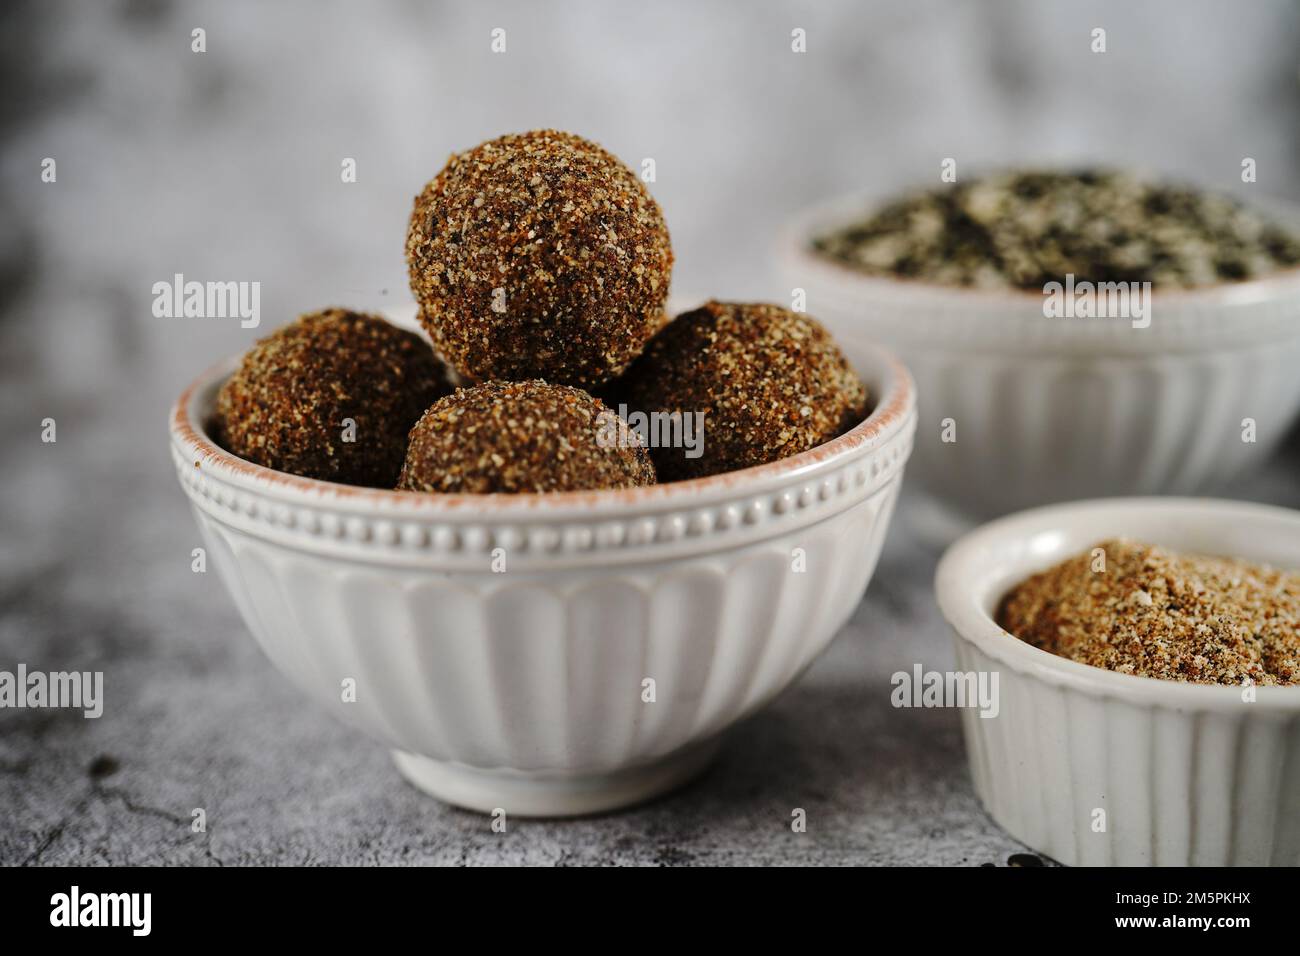 Palle ad alta energia proteica con lenticchie nere | URAD daal laddu, servito in una ciotola Foto Stock